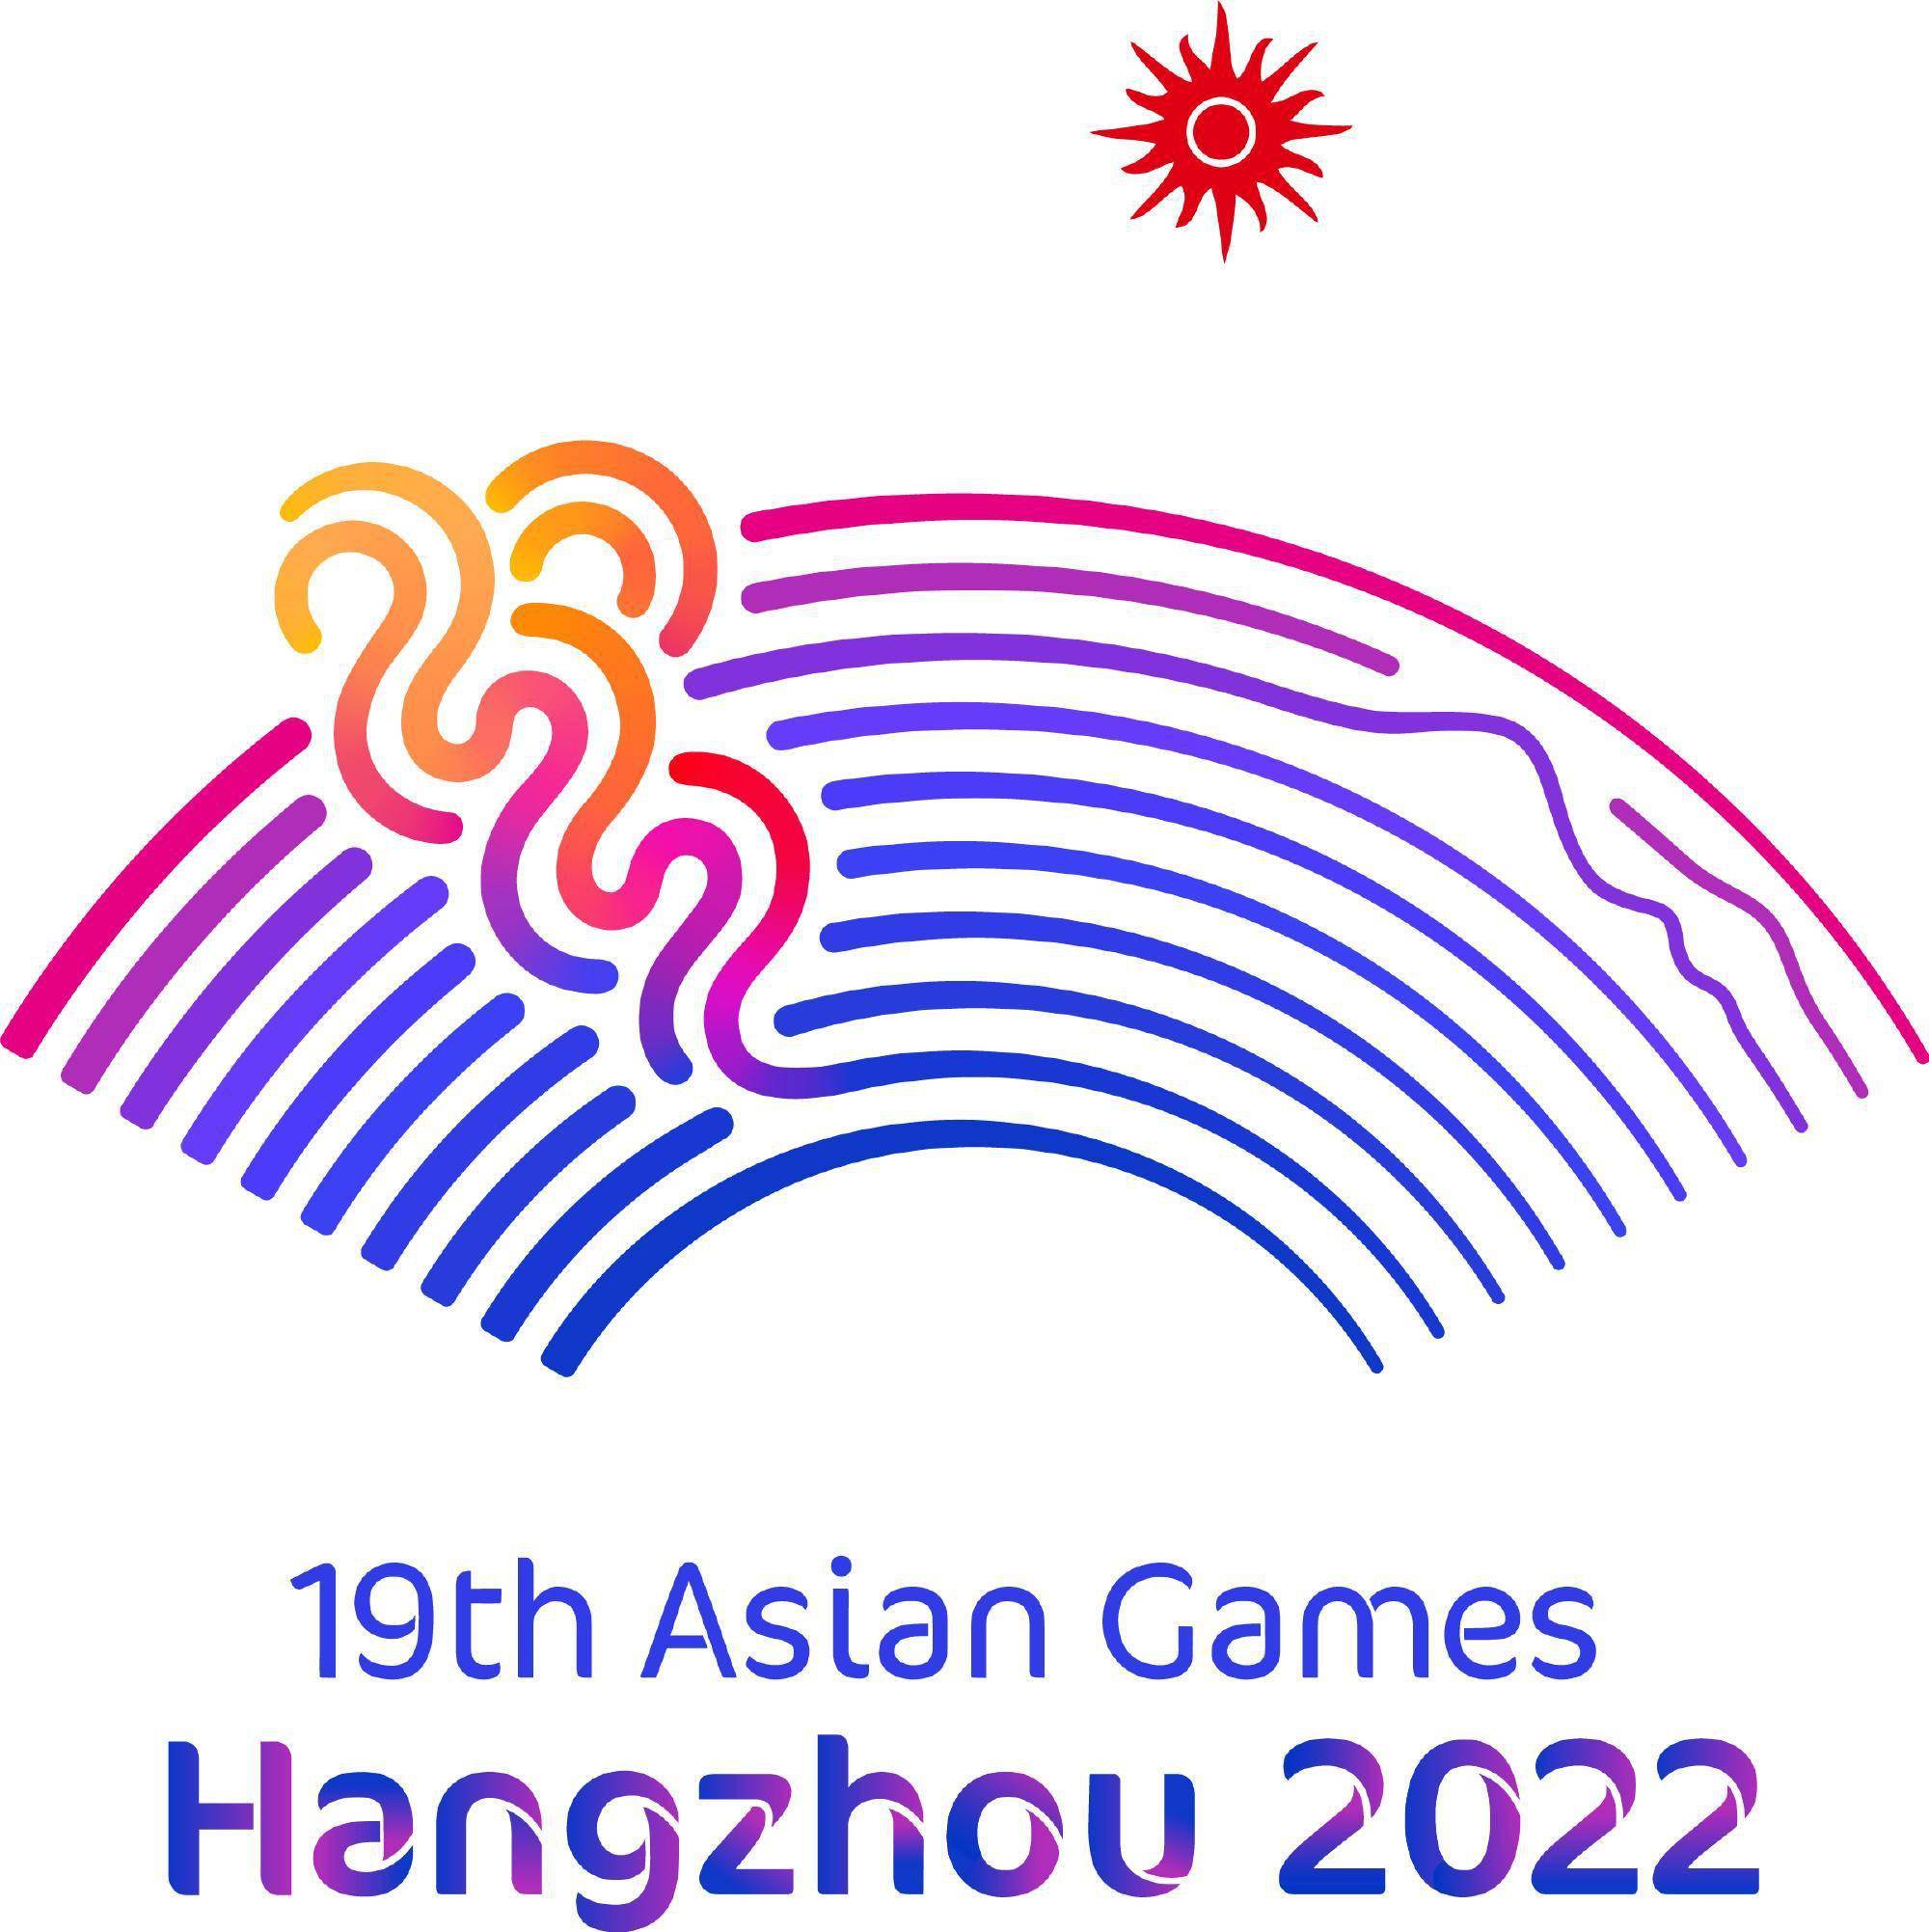 亚运会体育标志图片